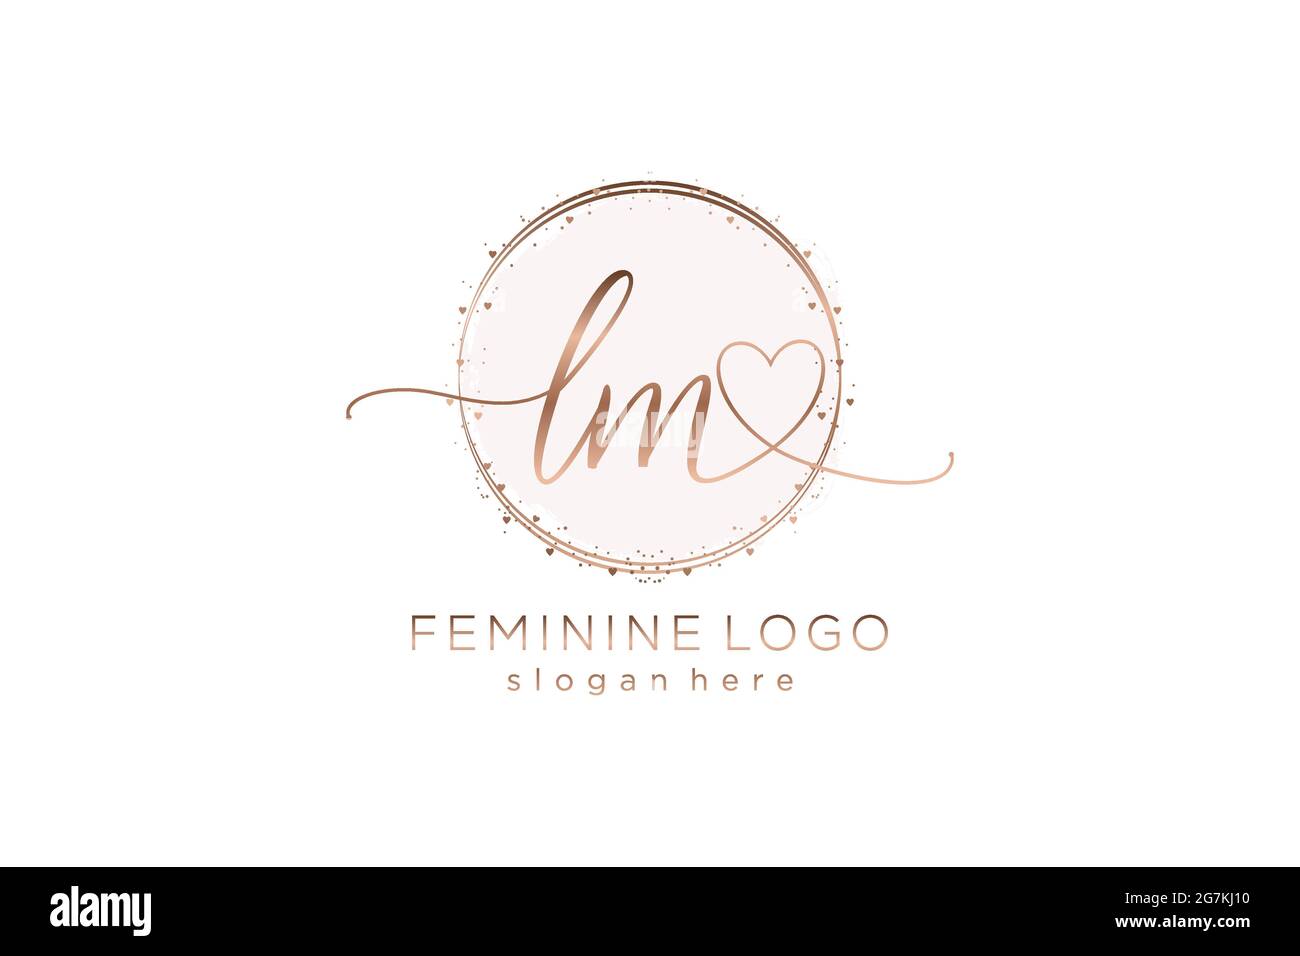 Lm Handschrift Logo mit Kreis Vorlage Vektor-Logo der ersten Hochzeit, Mode, Blumen und botanischen mit kreativen Vorlage. Stock Vektor